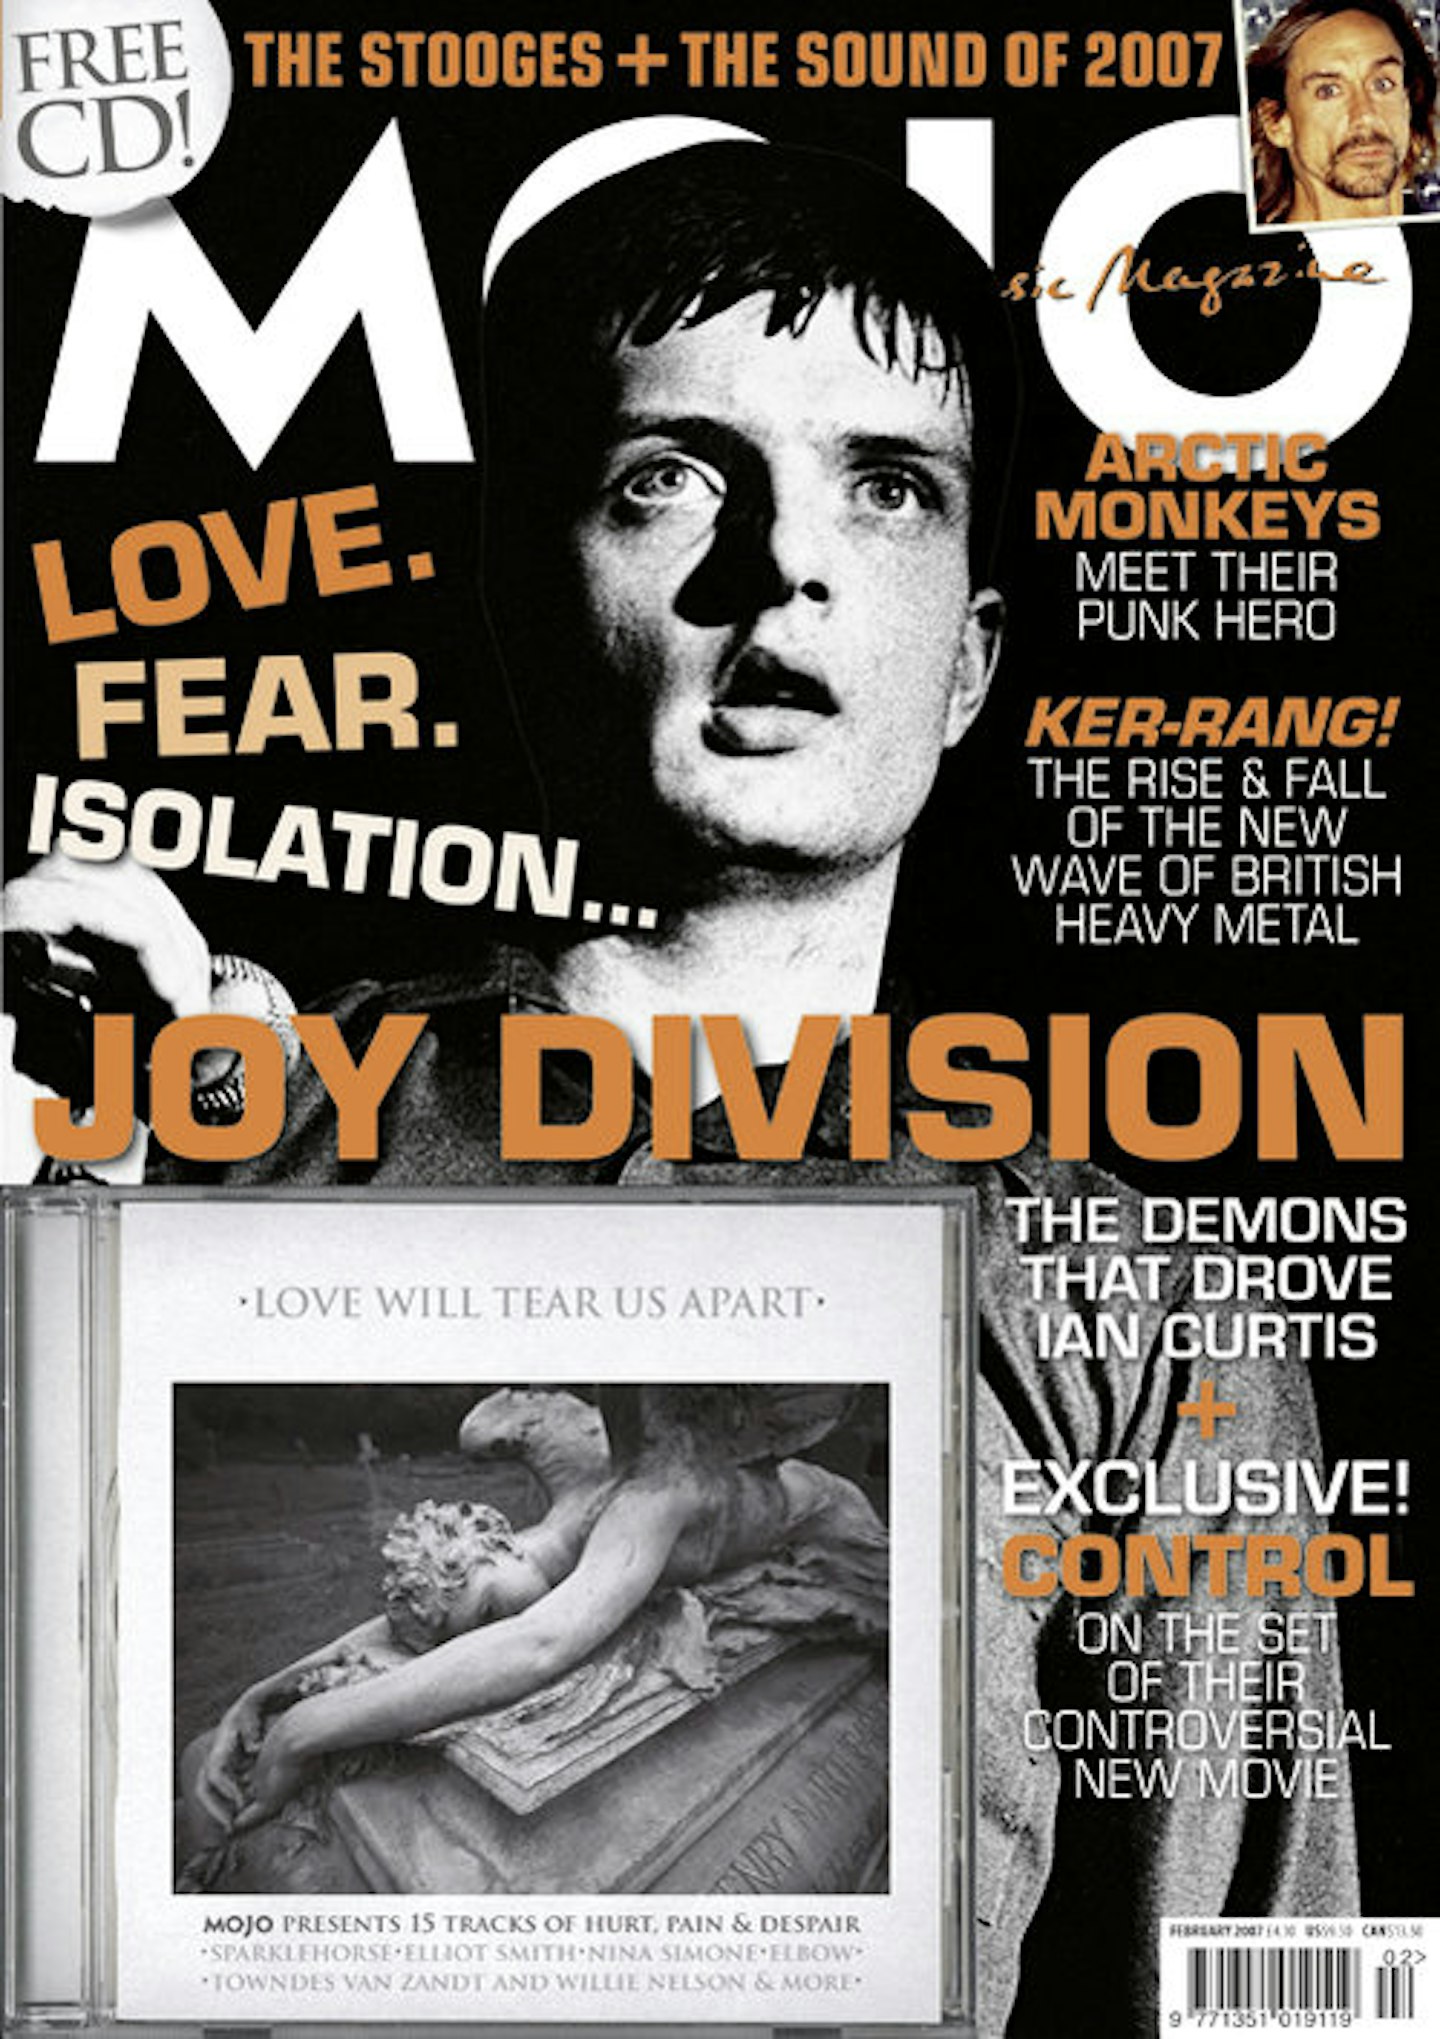 MOJO Issue 159 / February 2007